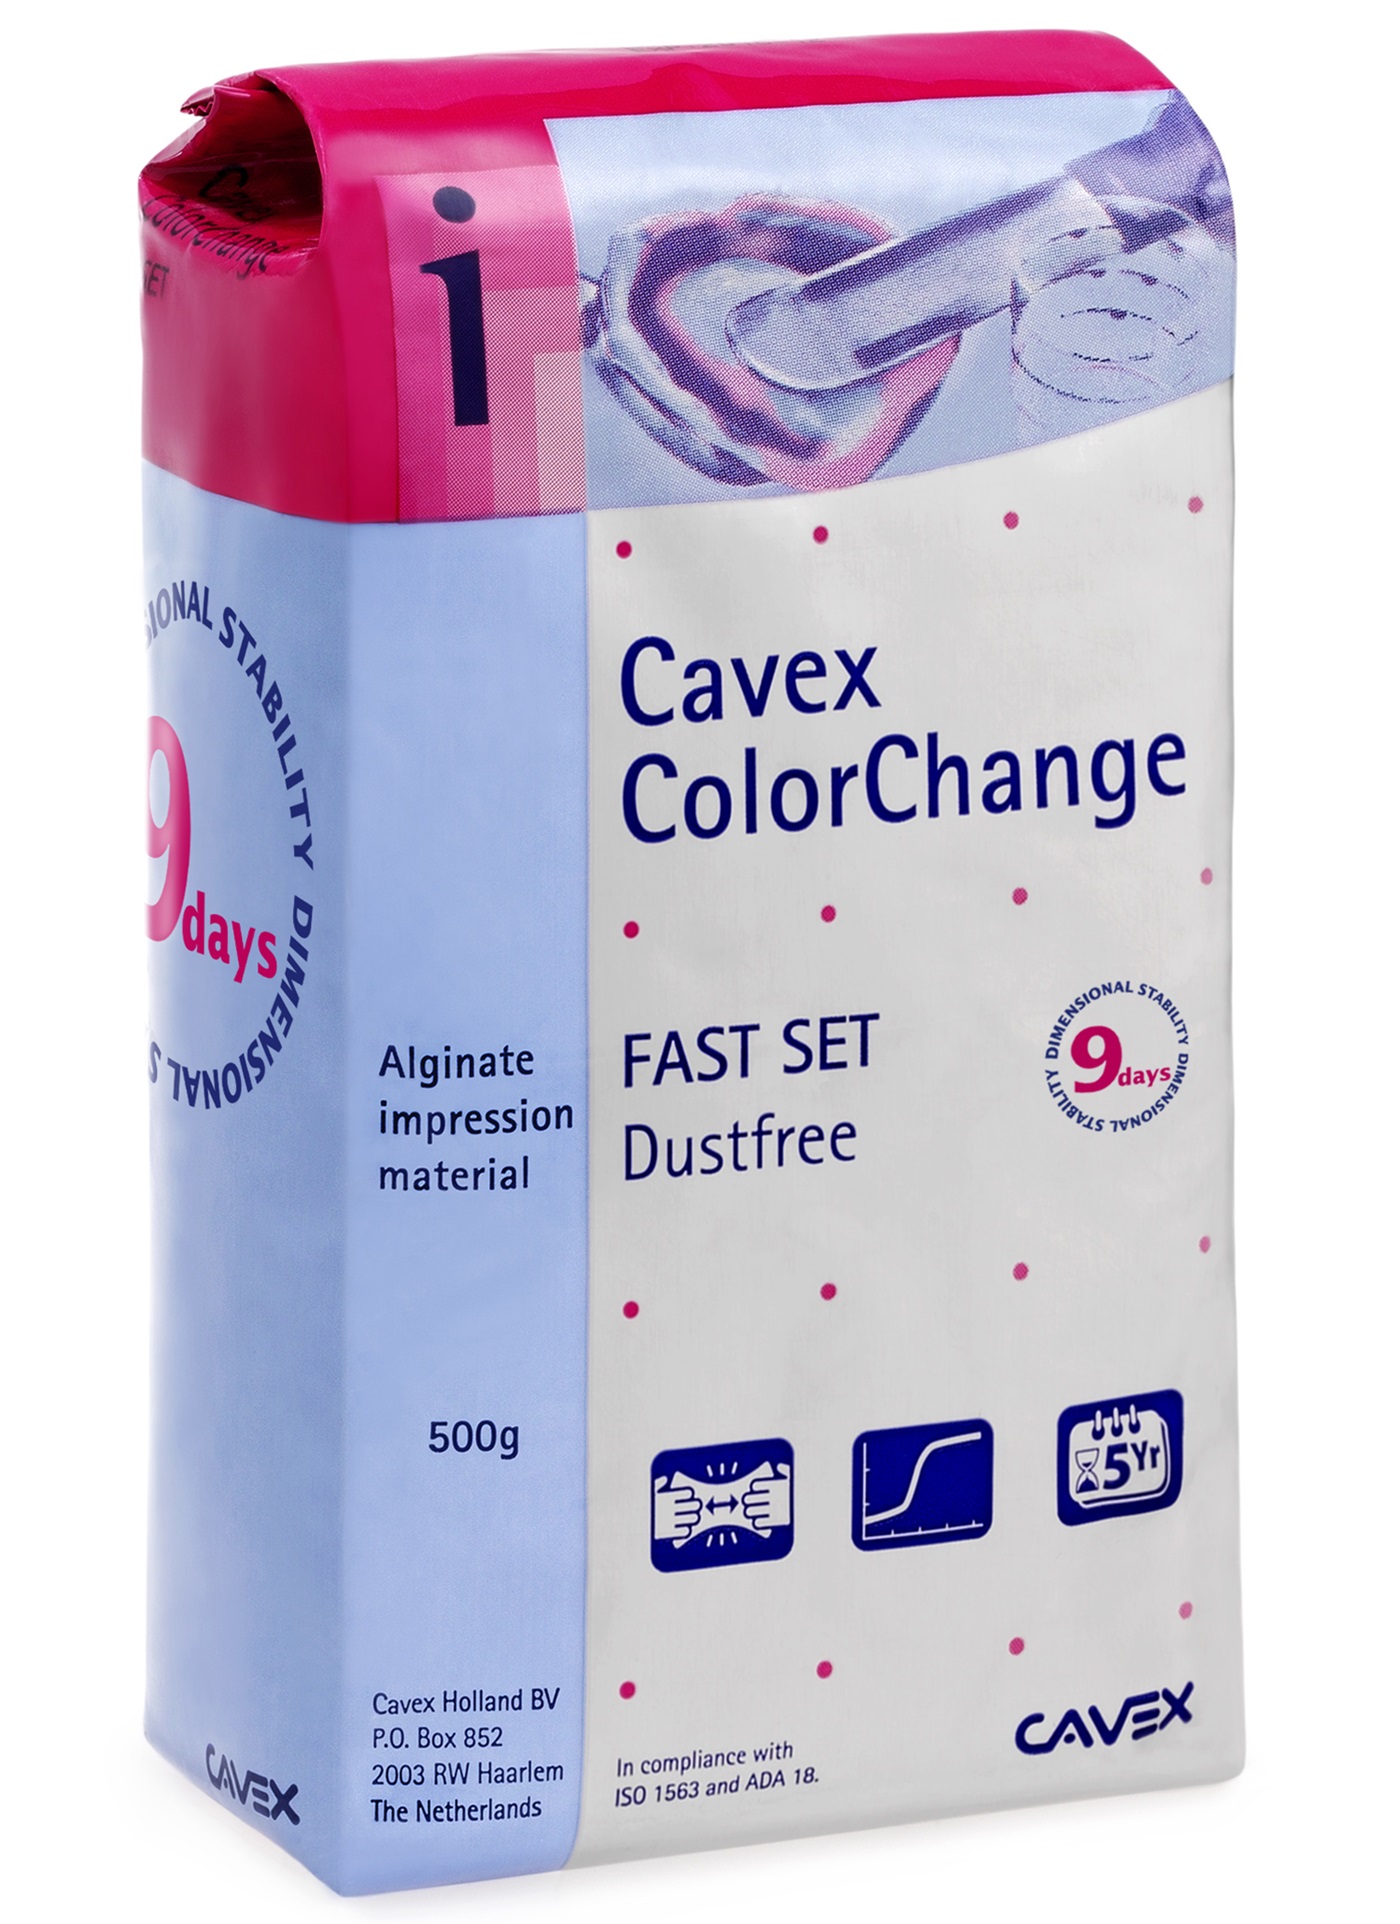 Cavex Colorchange alginát gyors 500g